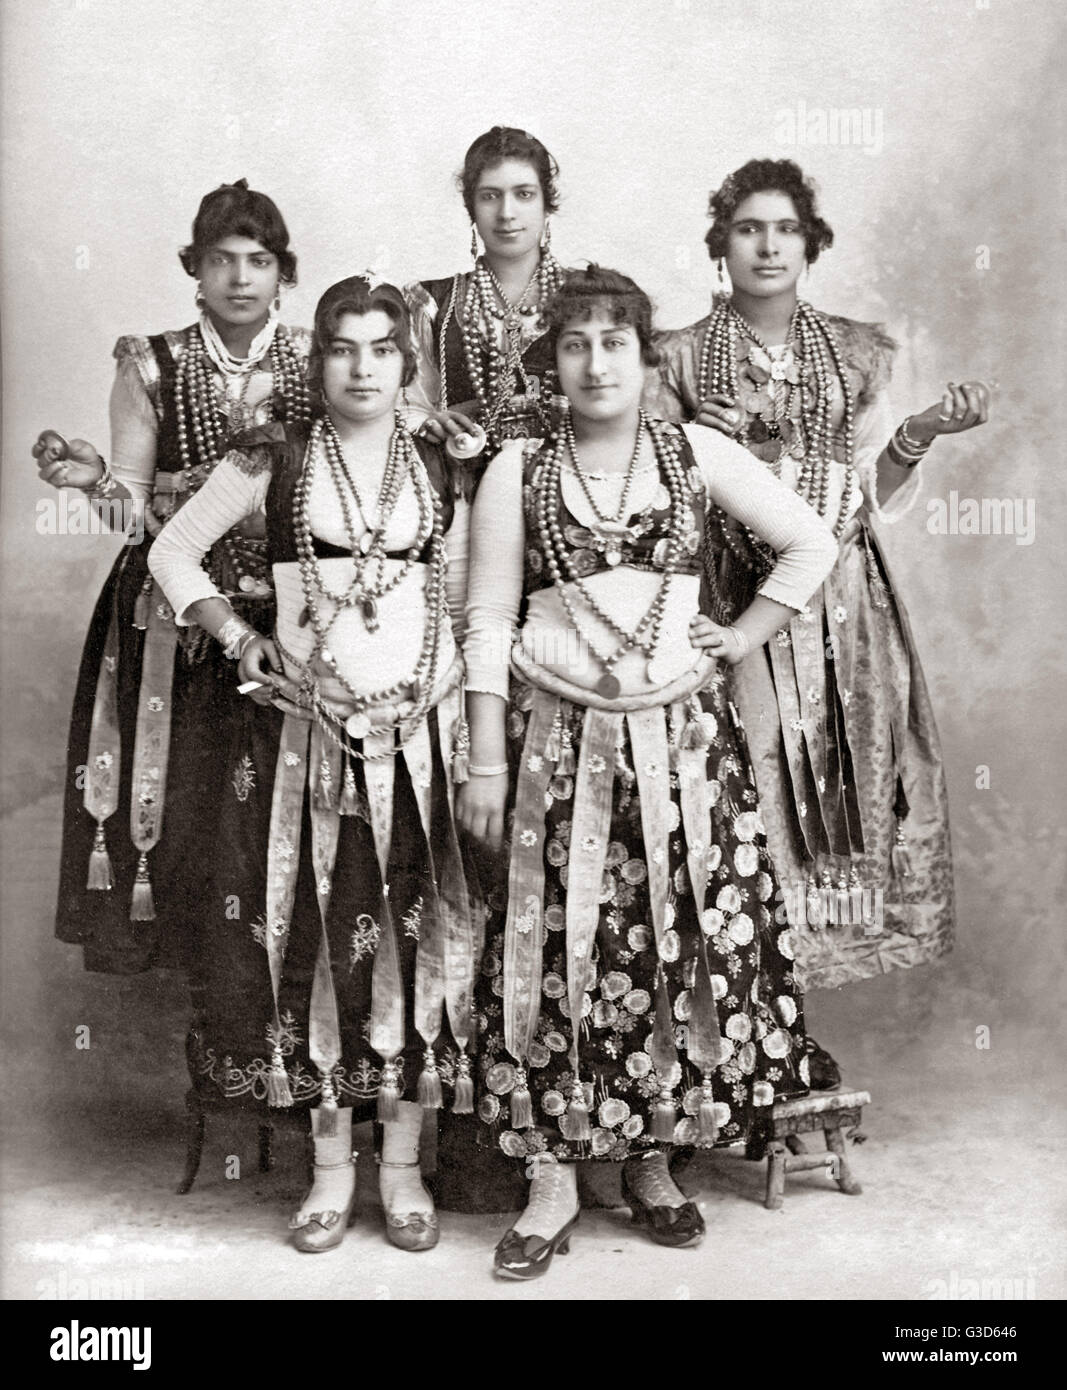 Danseurs, Égypte, vers 1890 Banque D'Images